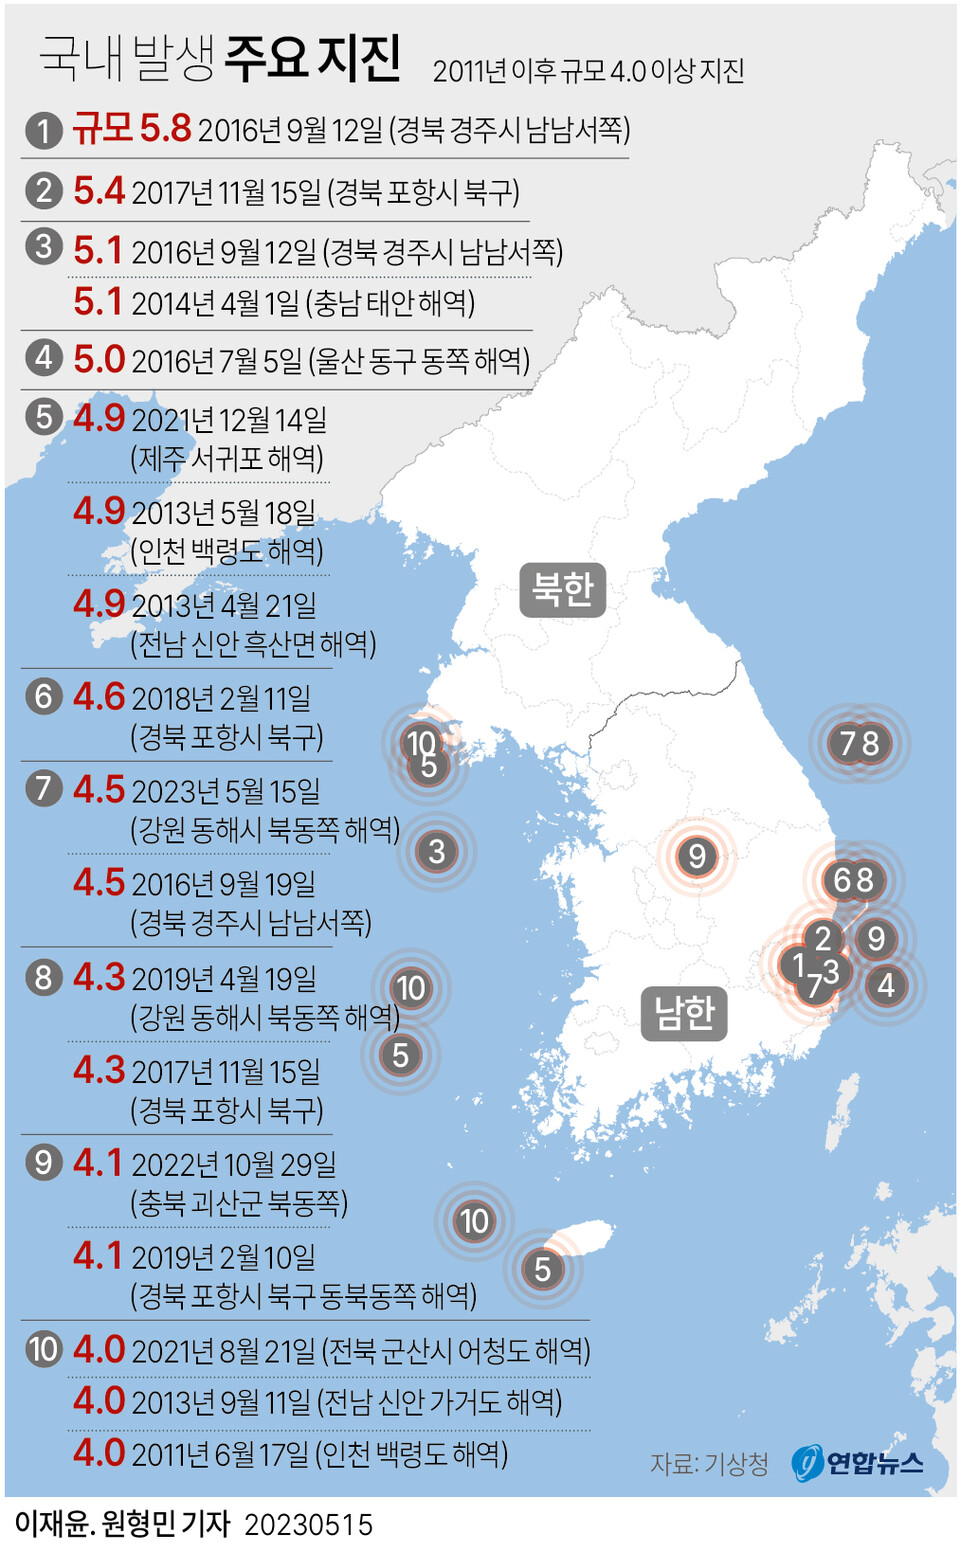 국내 규모 4.0 이상 지진 발생 현황. (출처: 연합뉴스)